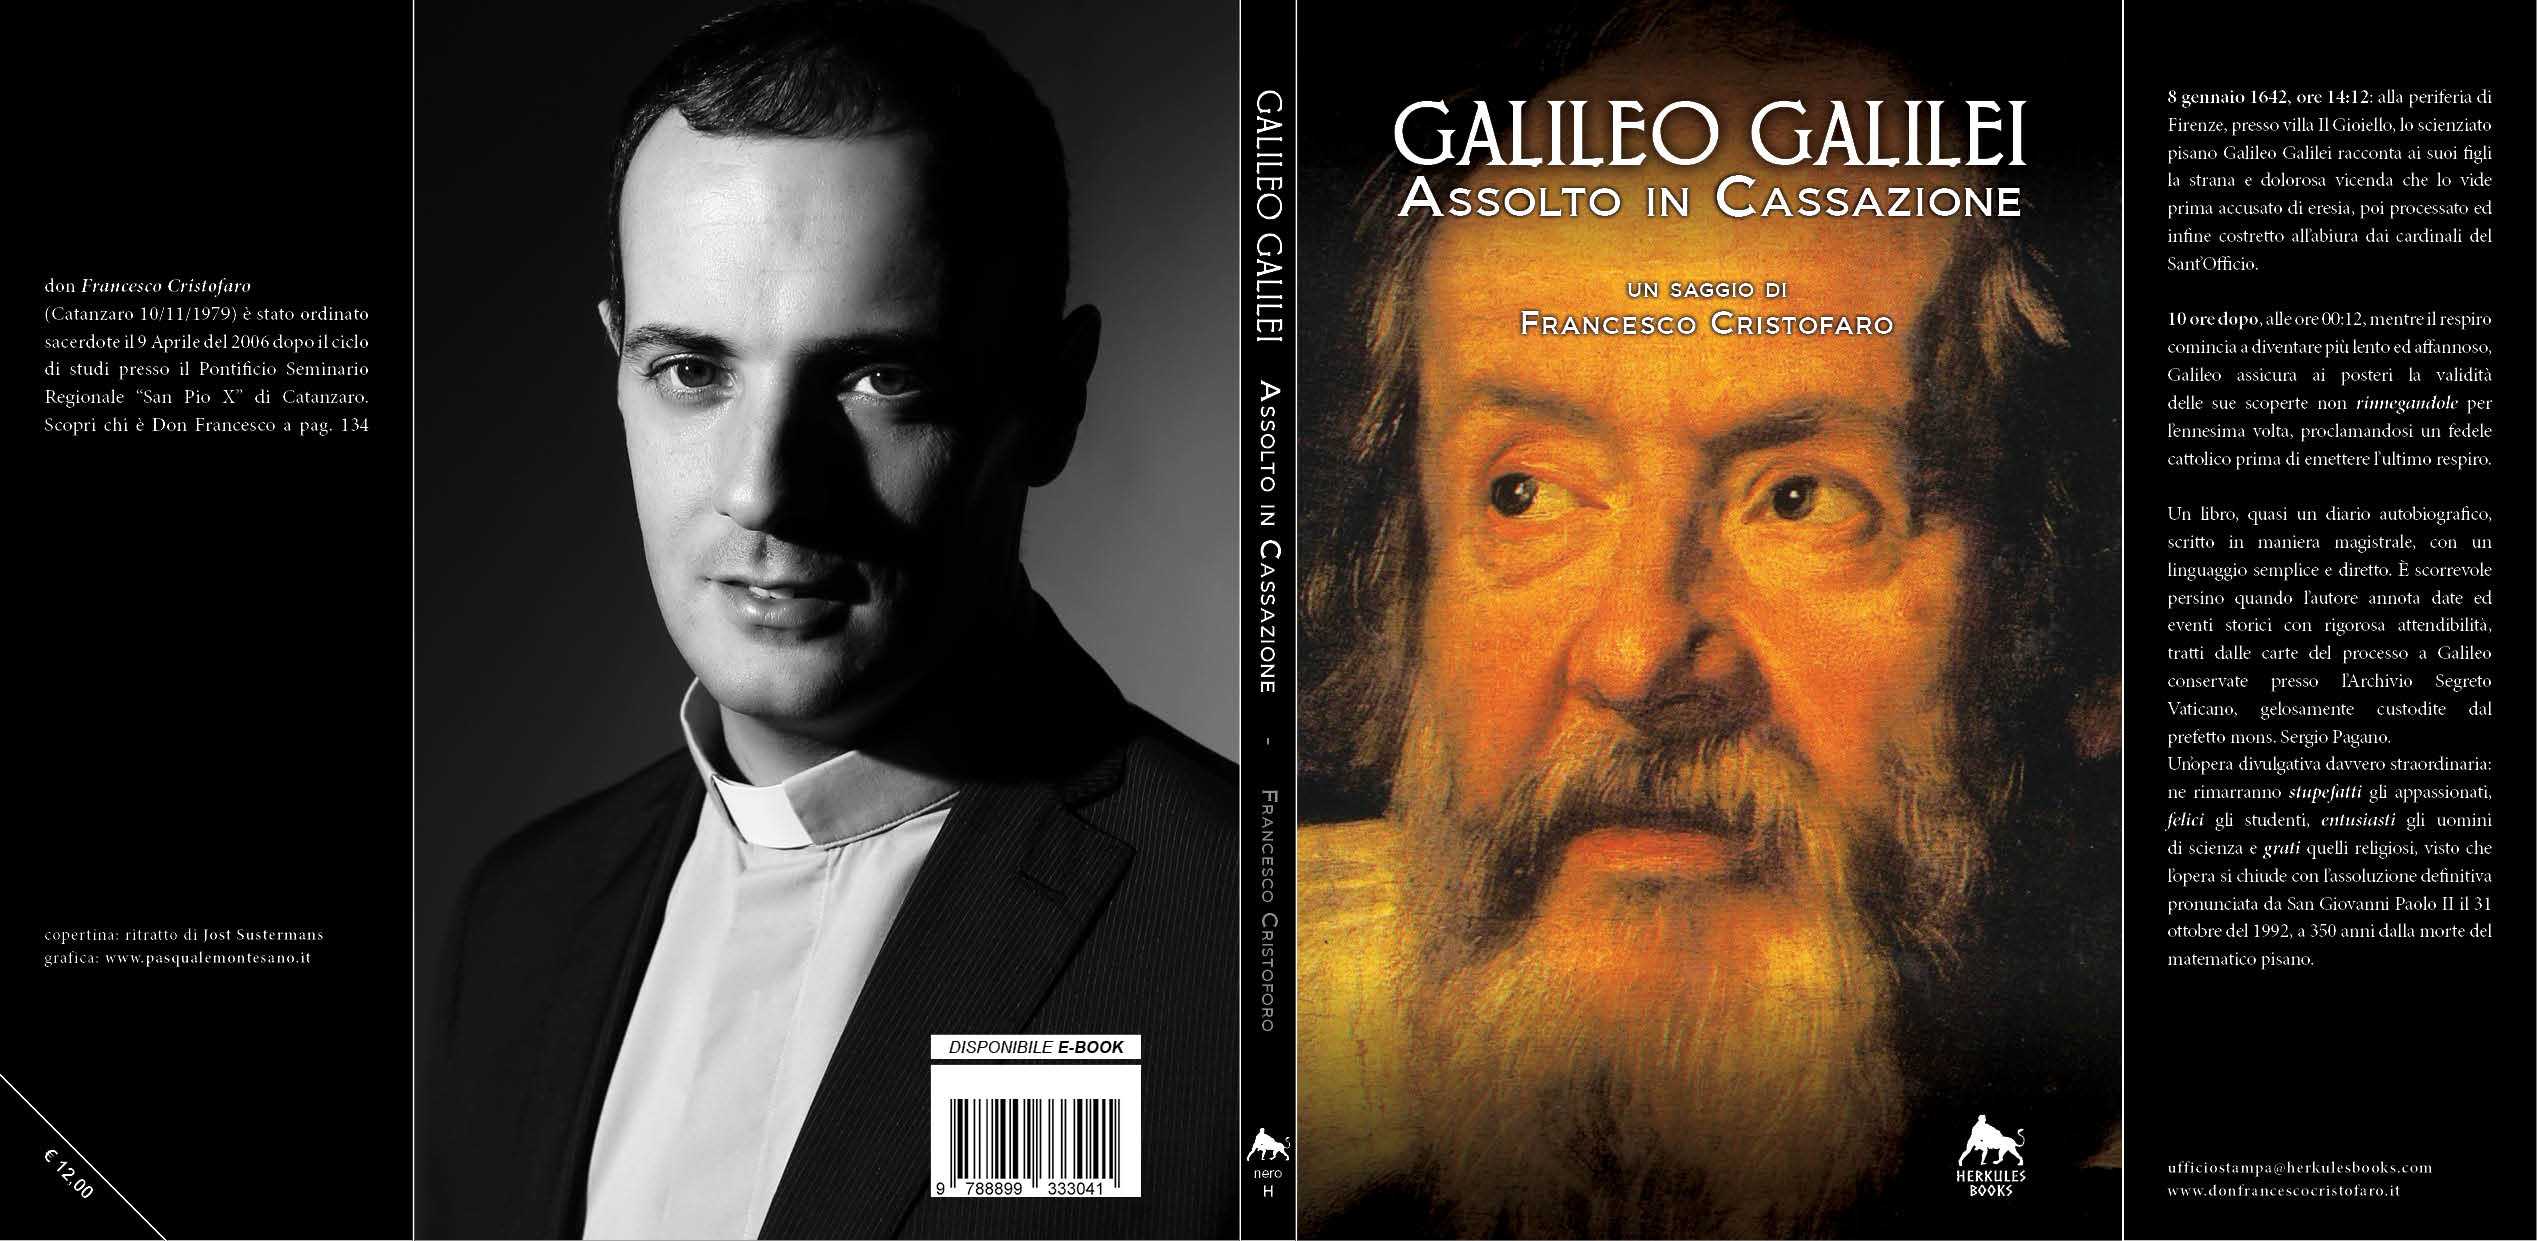 Nelle librerie Galileo Galilei. Assolto in cassazione di Don Francesco Cristofaro